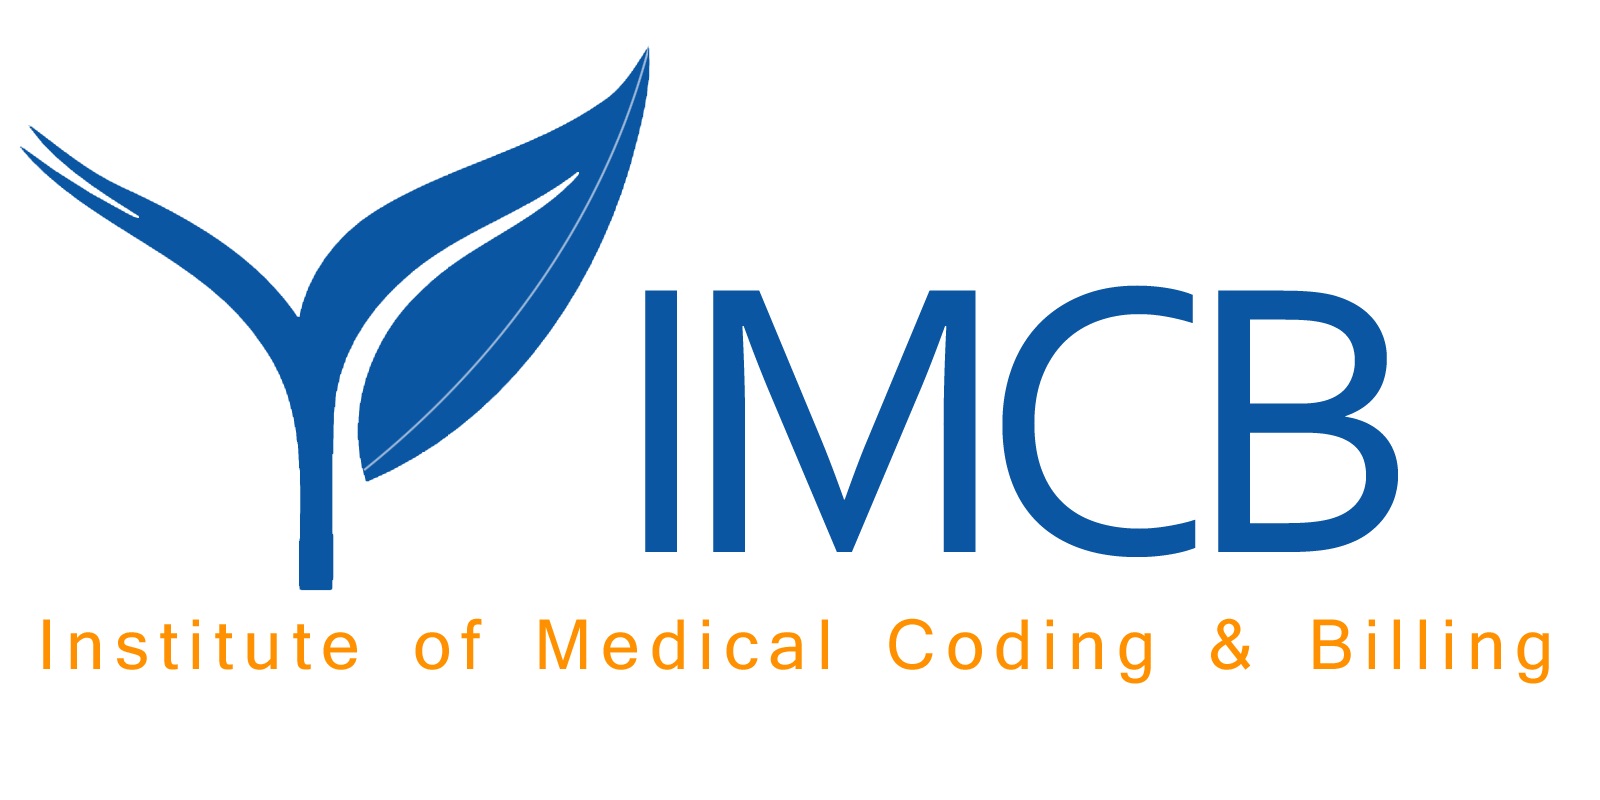 Medical Coding Training